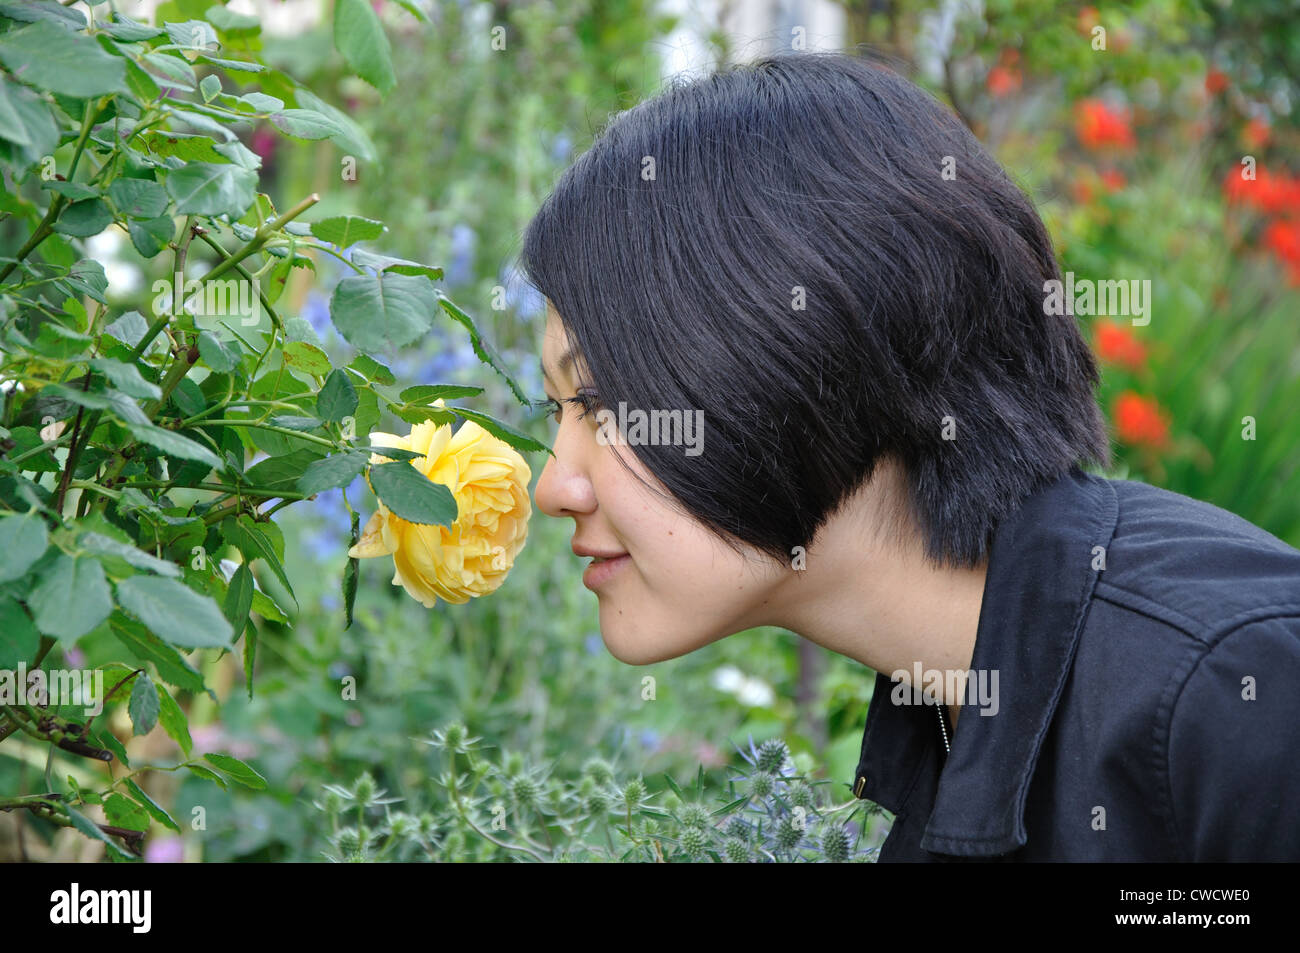 Jeune japonaise sentir une rose jaune, England, UK Banque D'Images